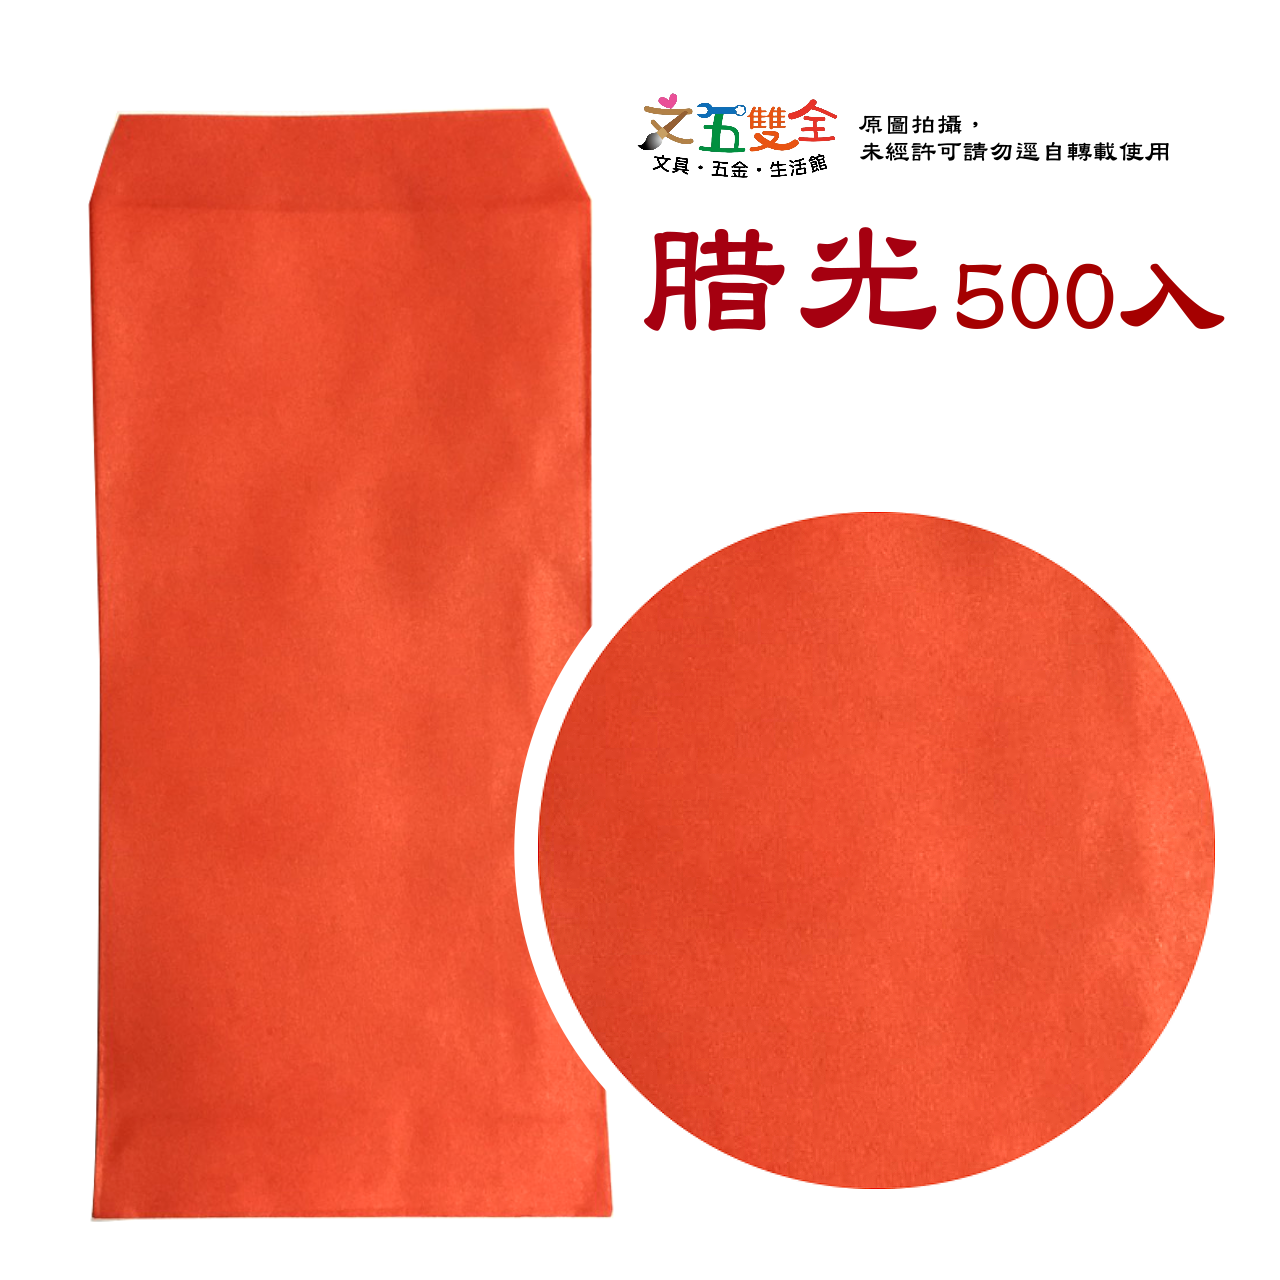 臘光 (腊光) 紅包袋 (500入/包)